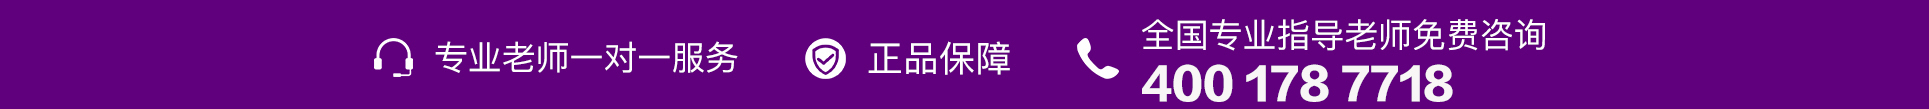 紫色电话-PC4.jpg